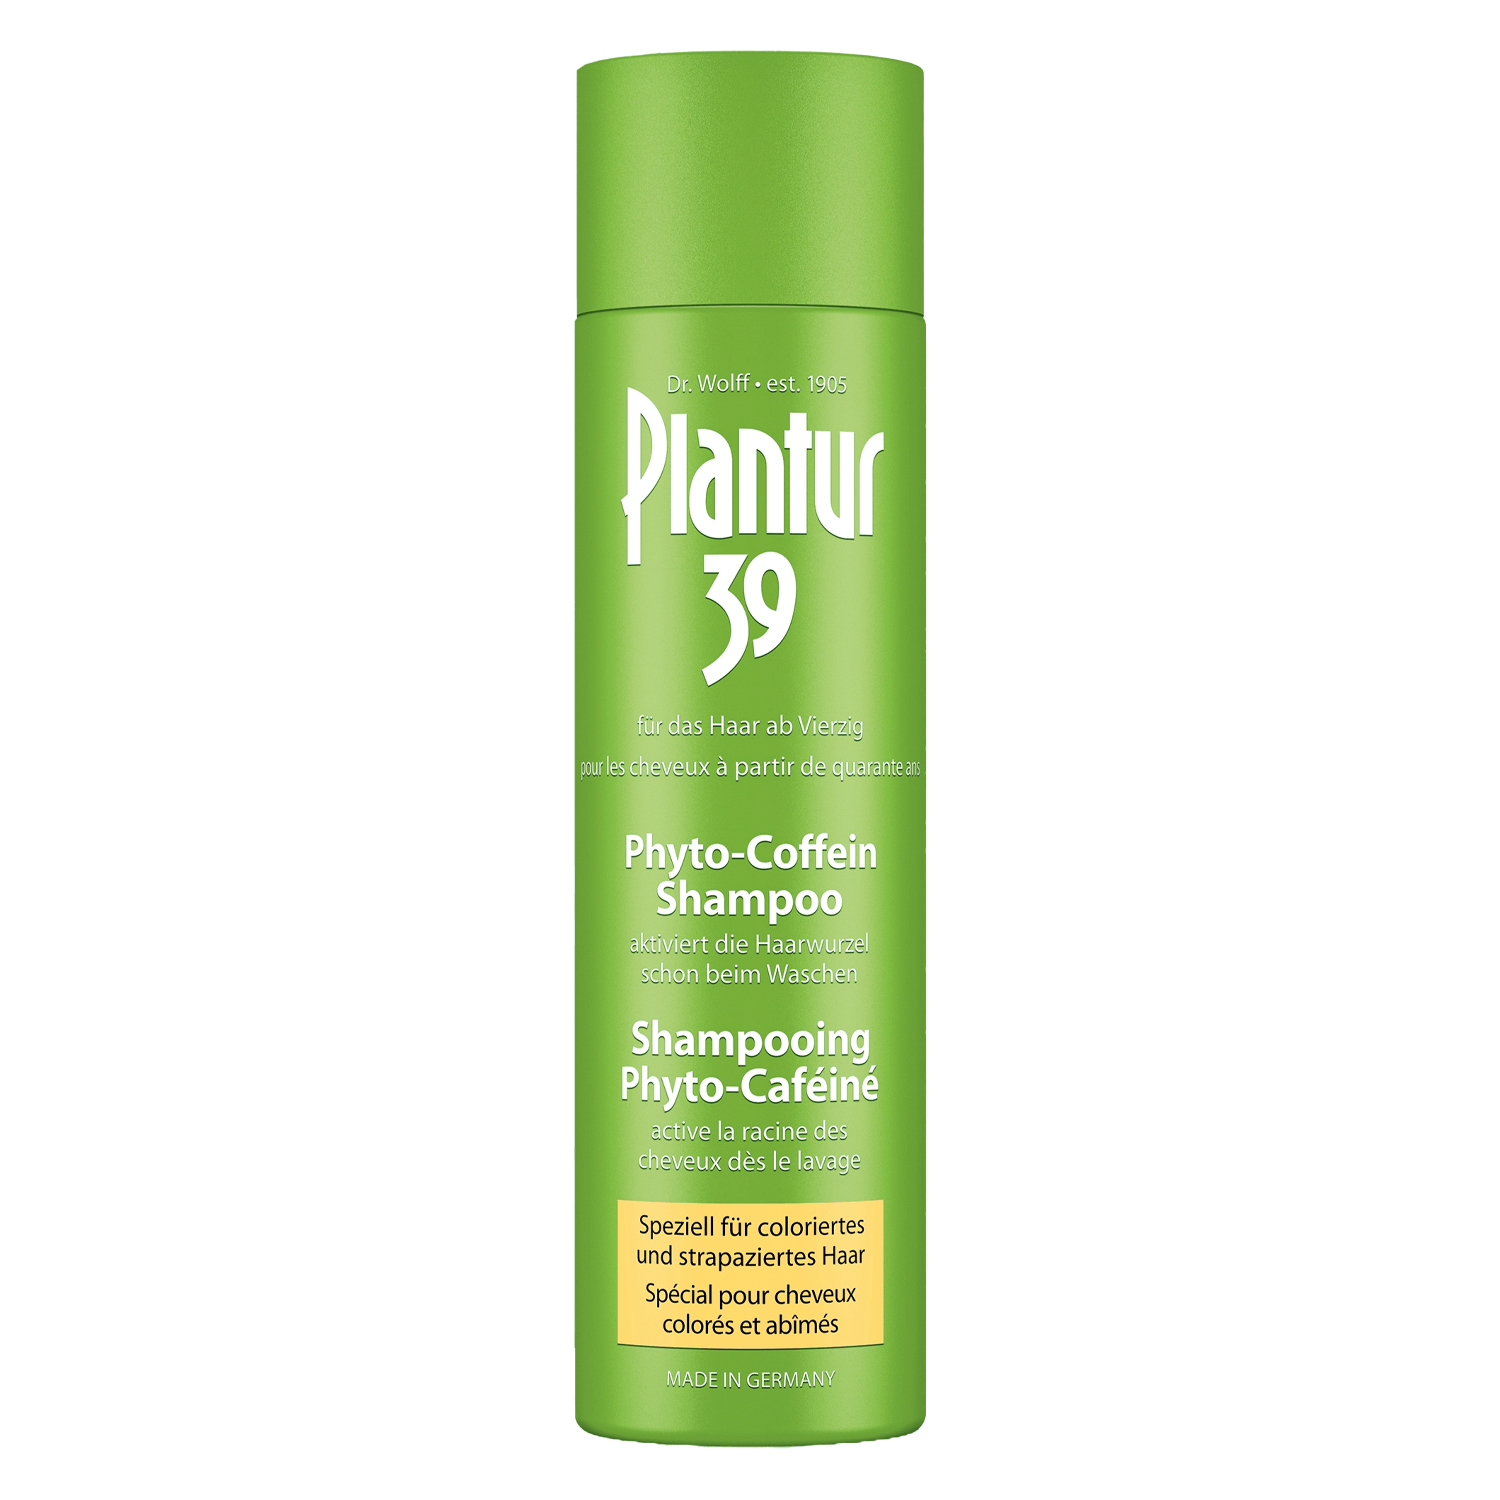 Produktbild von Plantur 39 - Coffein-Shampoo speziell für coloriertes und strapaziertes Haar